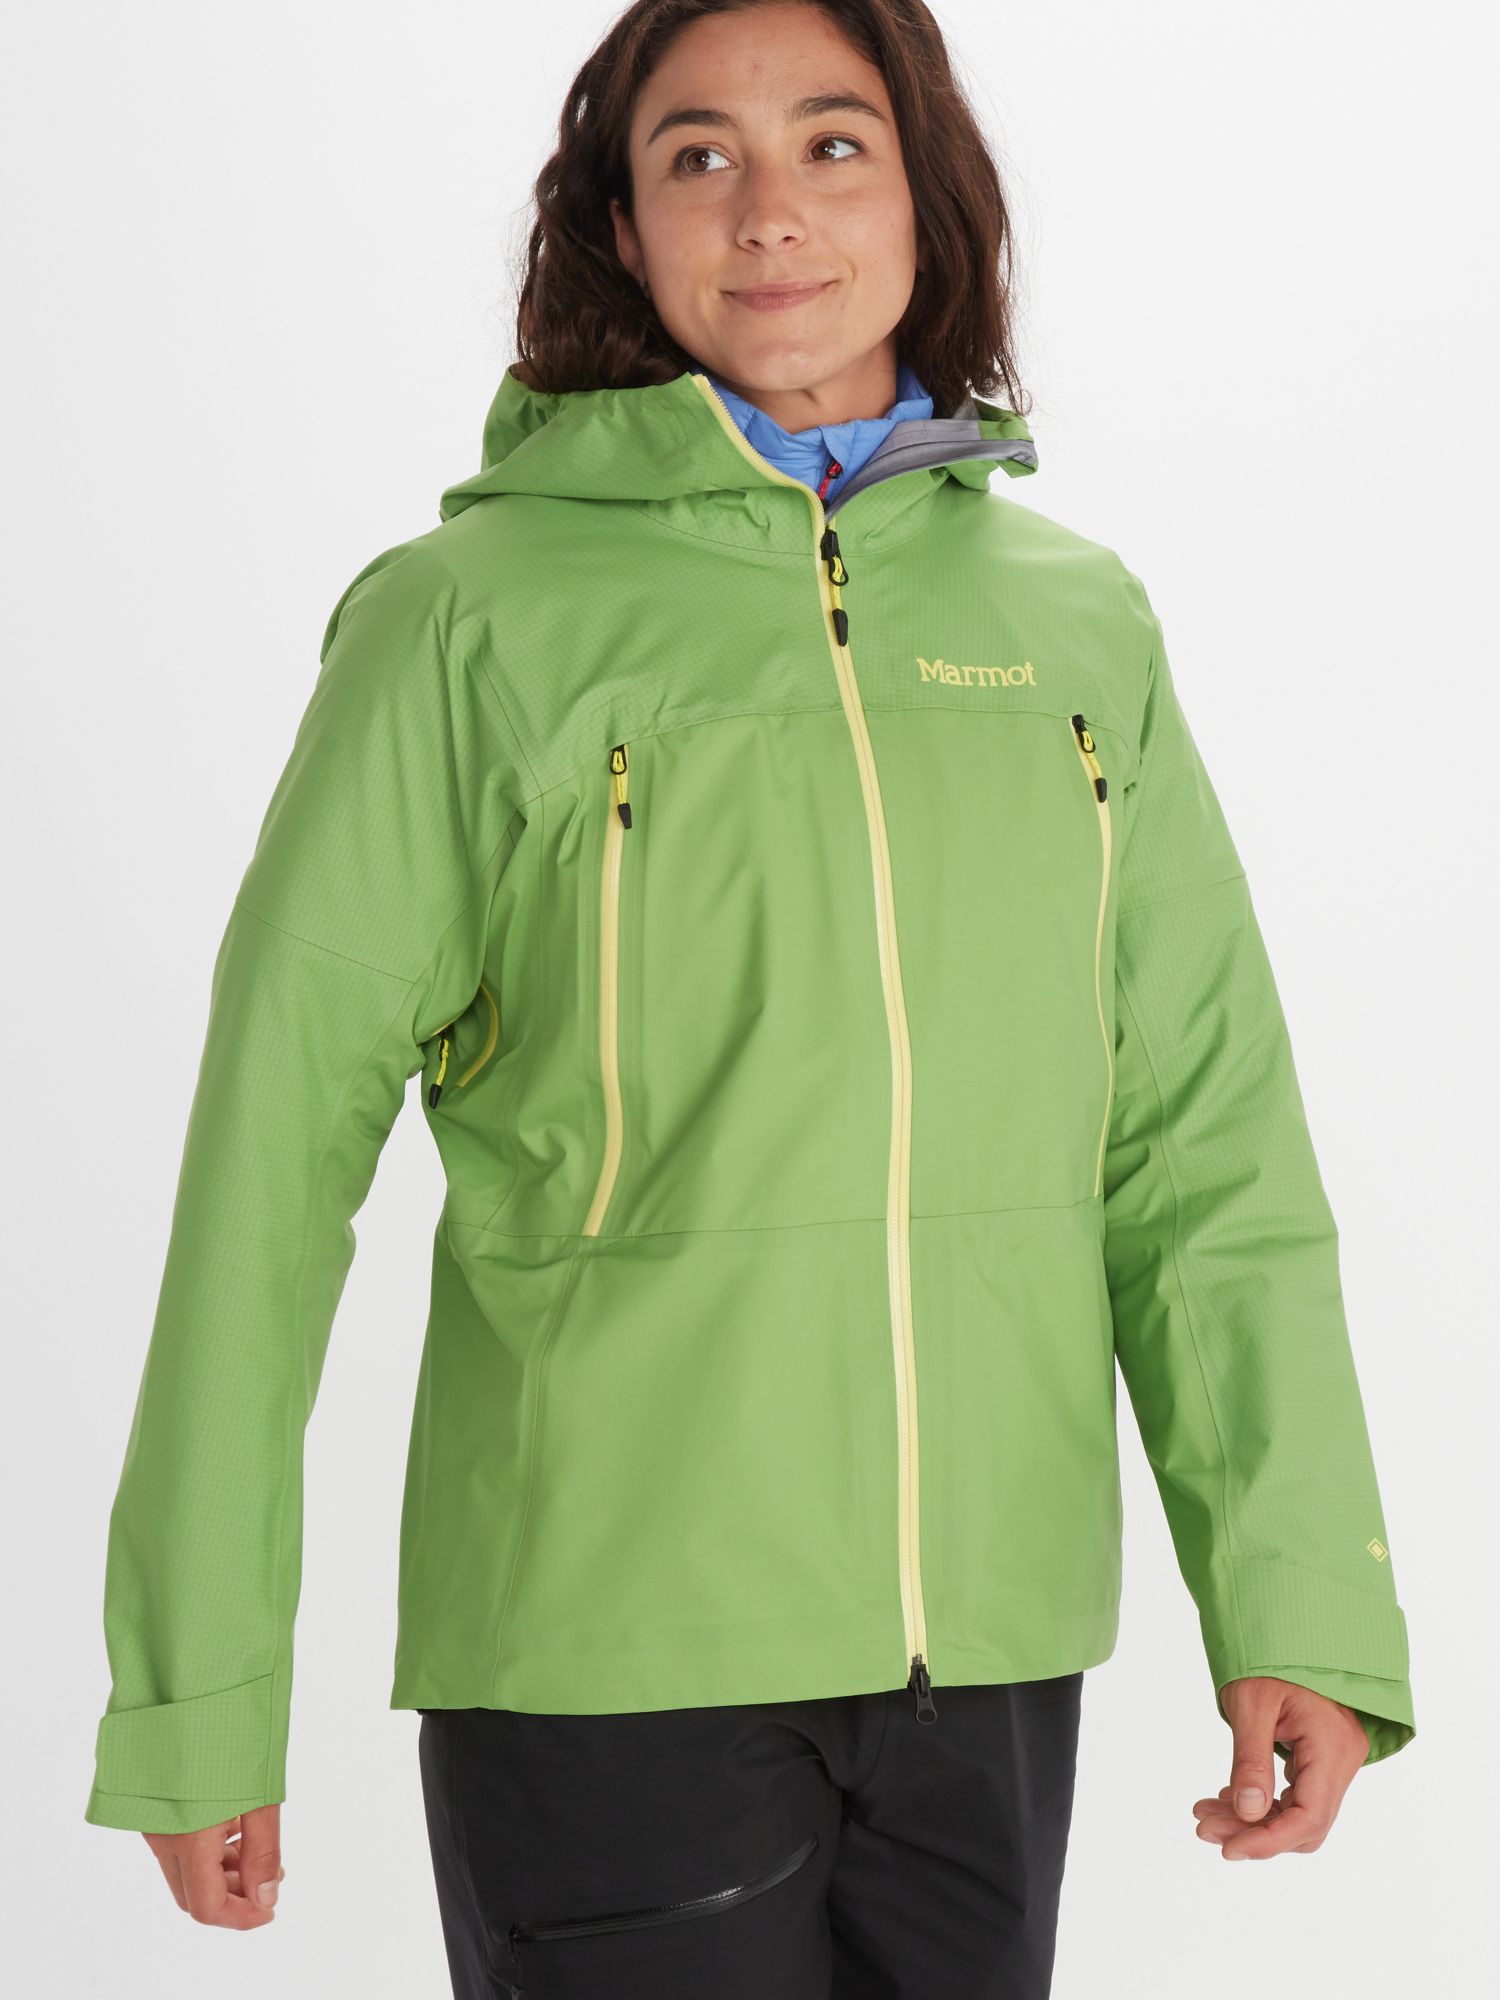 Women's Peak GORE-TEX Jacket | Marmot